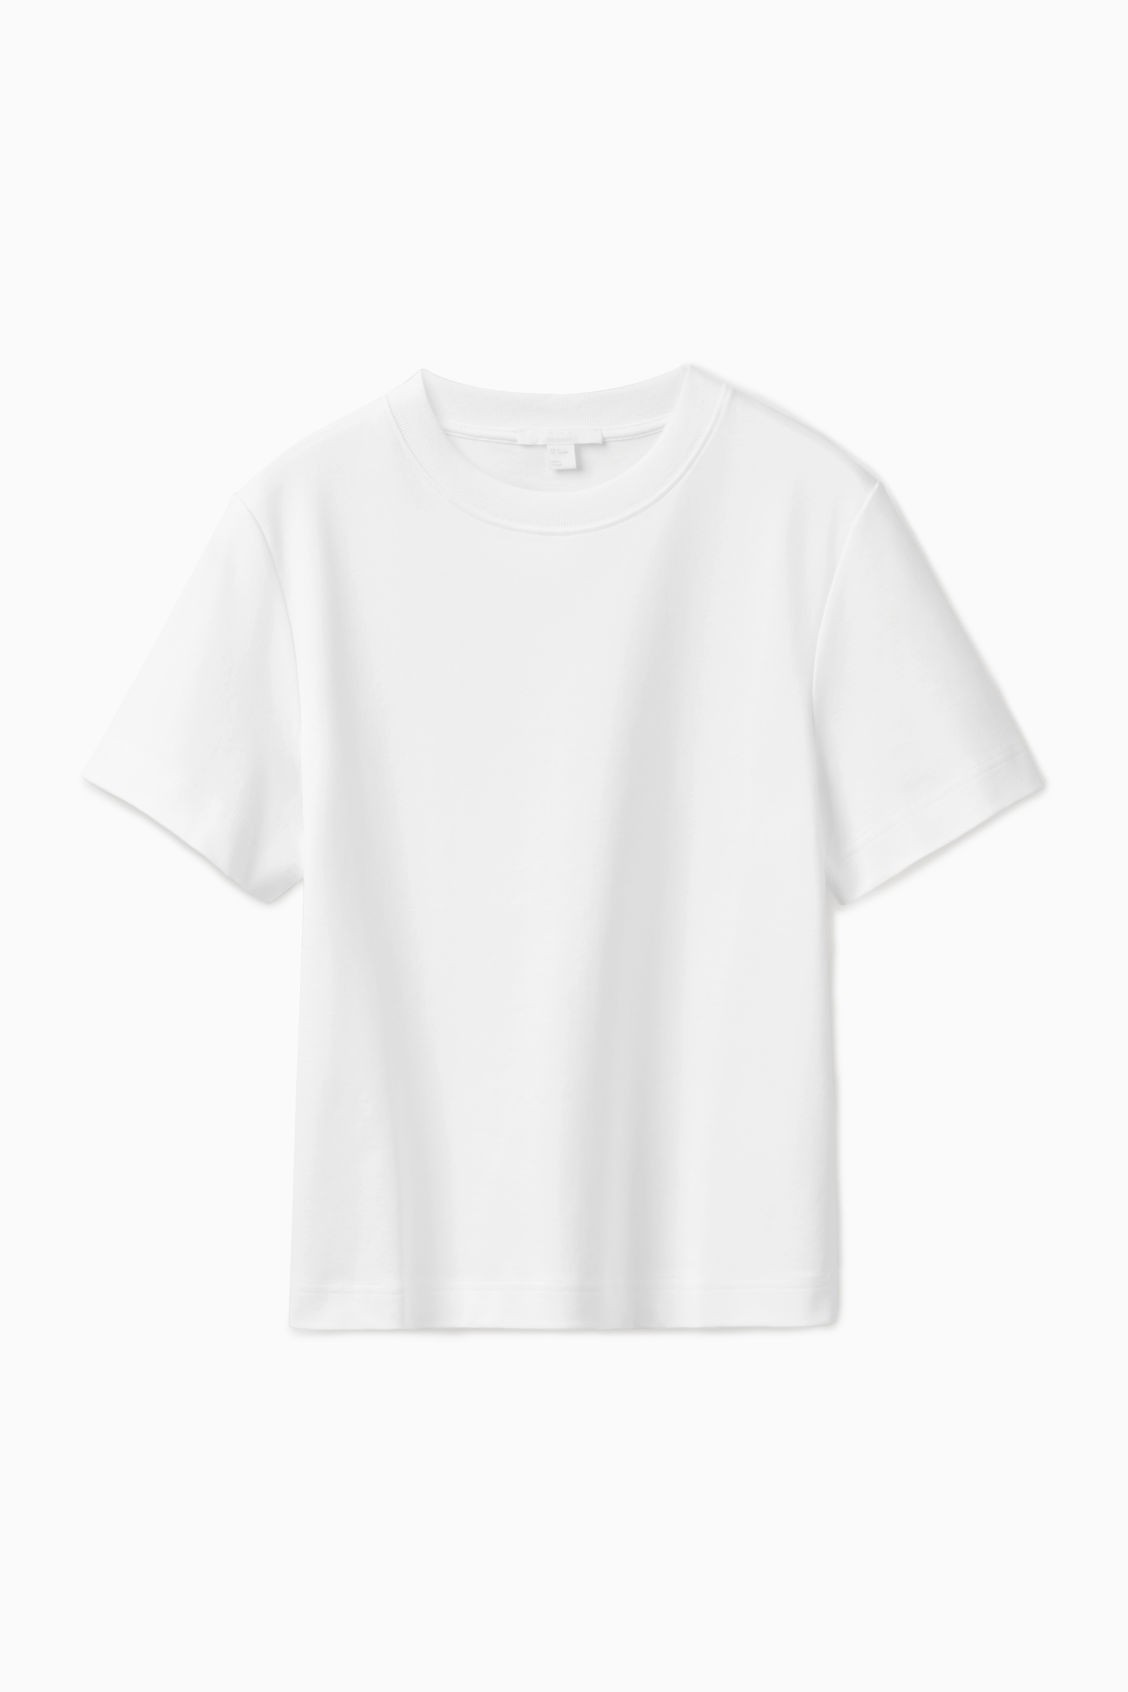 COS %100 Pamuk Tshirt - Beyaz